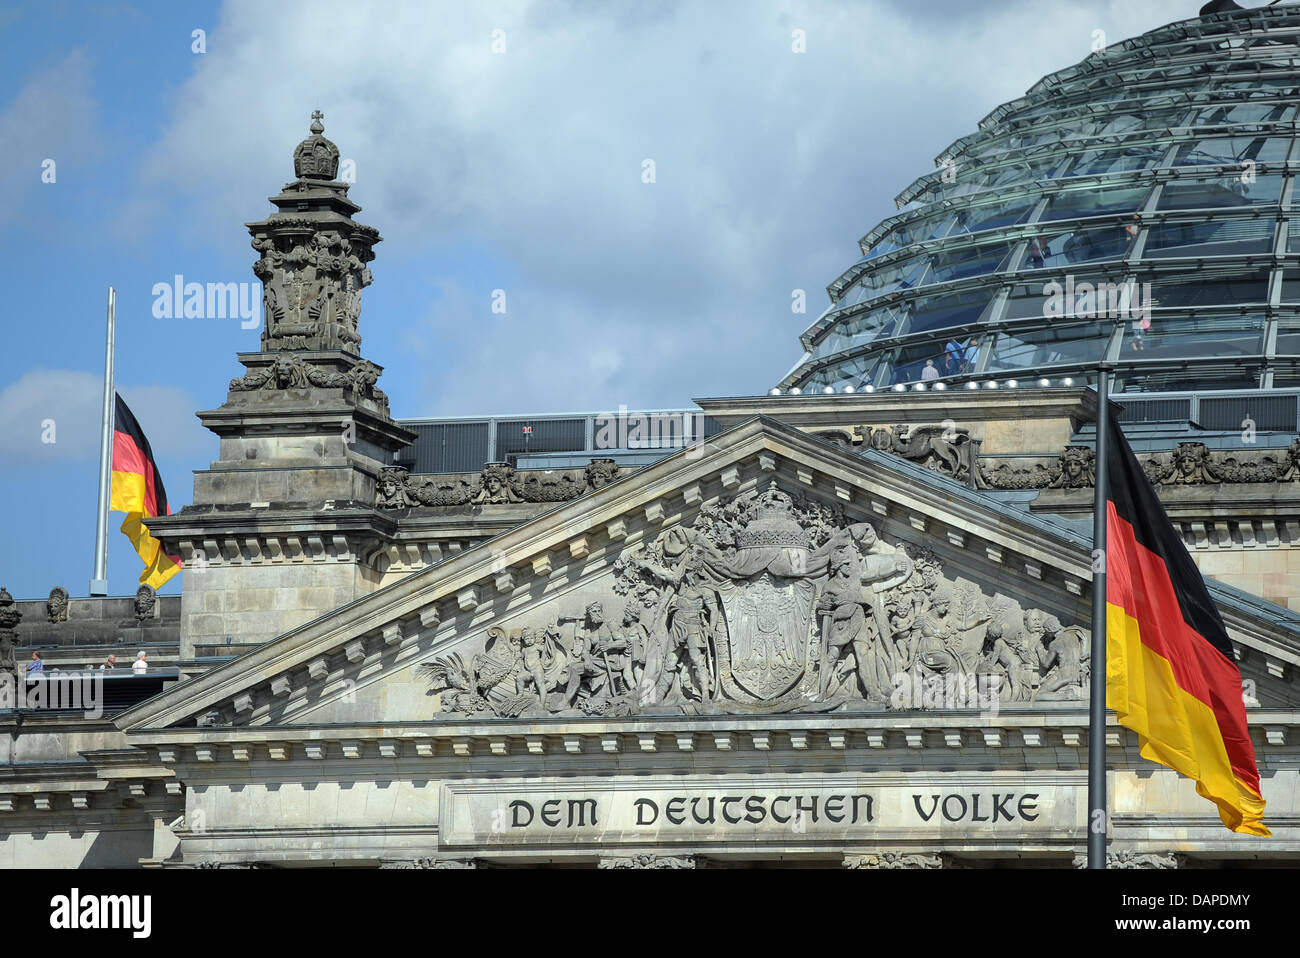 Die Flaggen hängen am Samstag (13.08.2011) am Reichstag di Berlino auf Halbmast. Anlässlich der Teilung berlinese 50 vor Jahren, am 13. Agosto 1961 wird an die Opfer von Mauer und Teilung erinnert. Foto: Britta Pedersen dpa/lbn +++(c) dpa - Bildfunk+++ Foto Stock